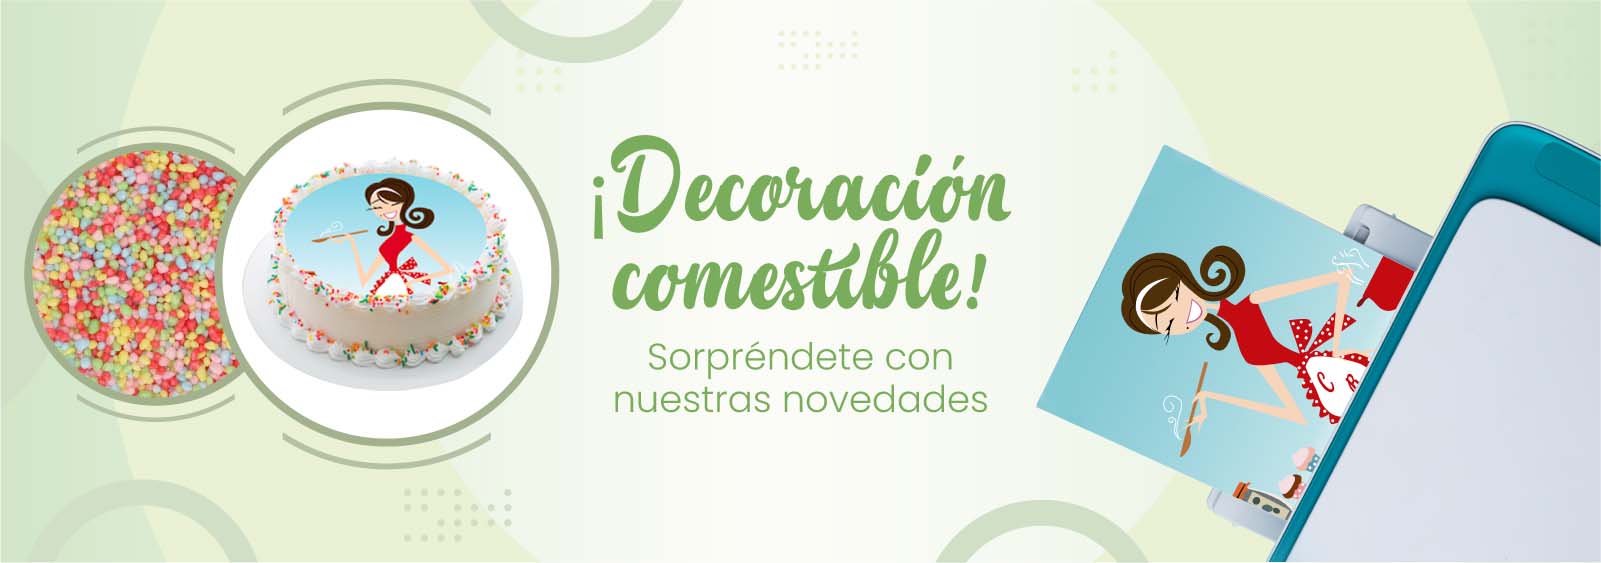 Rotulador Comestible Blanco | Tienda Online Reposteria Creativa